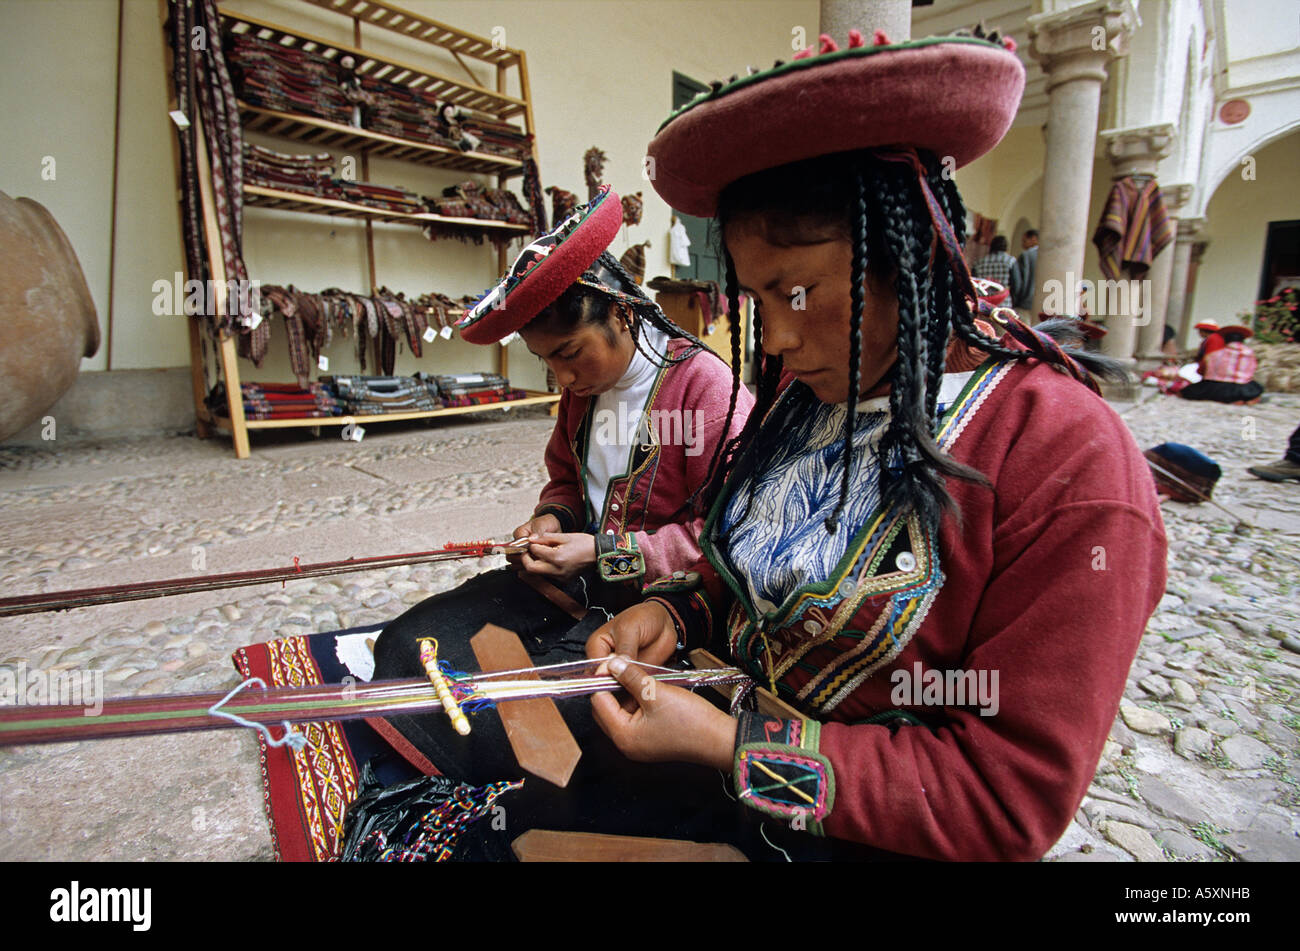 Tessitori peruviani vestiti in abiti tradizionali (Cuzco - Perù). Tisseuses péruviennes en costume traditionnel (Cuzco - Pérou). Foto Stock